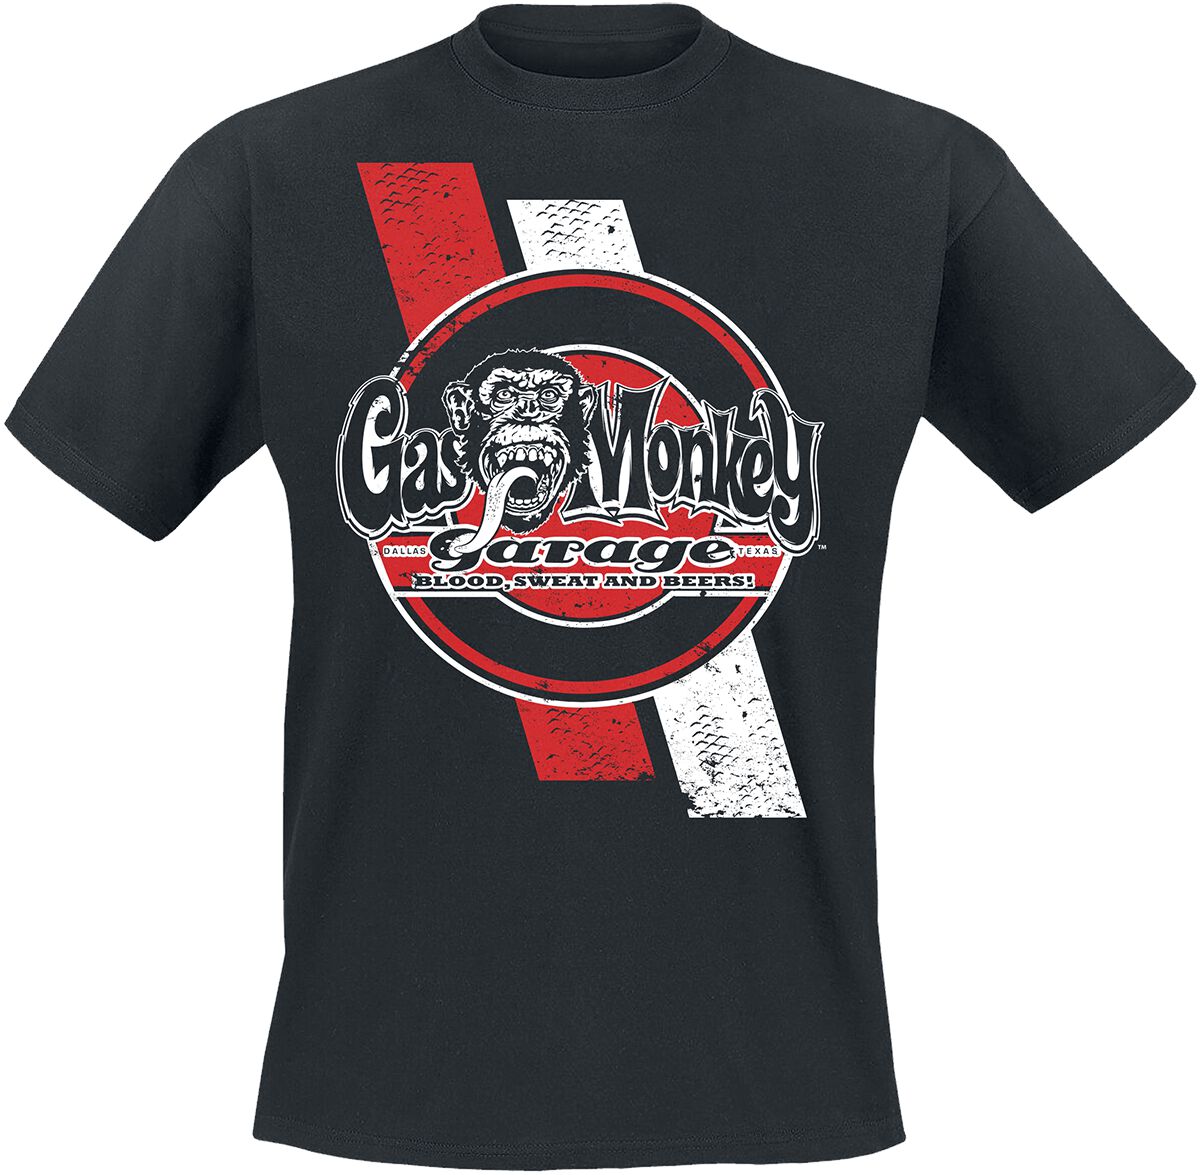 Gas Monkey Garage T-Shirt - Red And White Stripes - S bis XXL - für Männer - Größe XXL - schwarz  - Lizenzierter Fanartikel